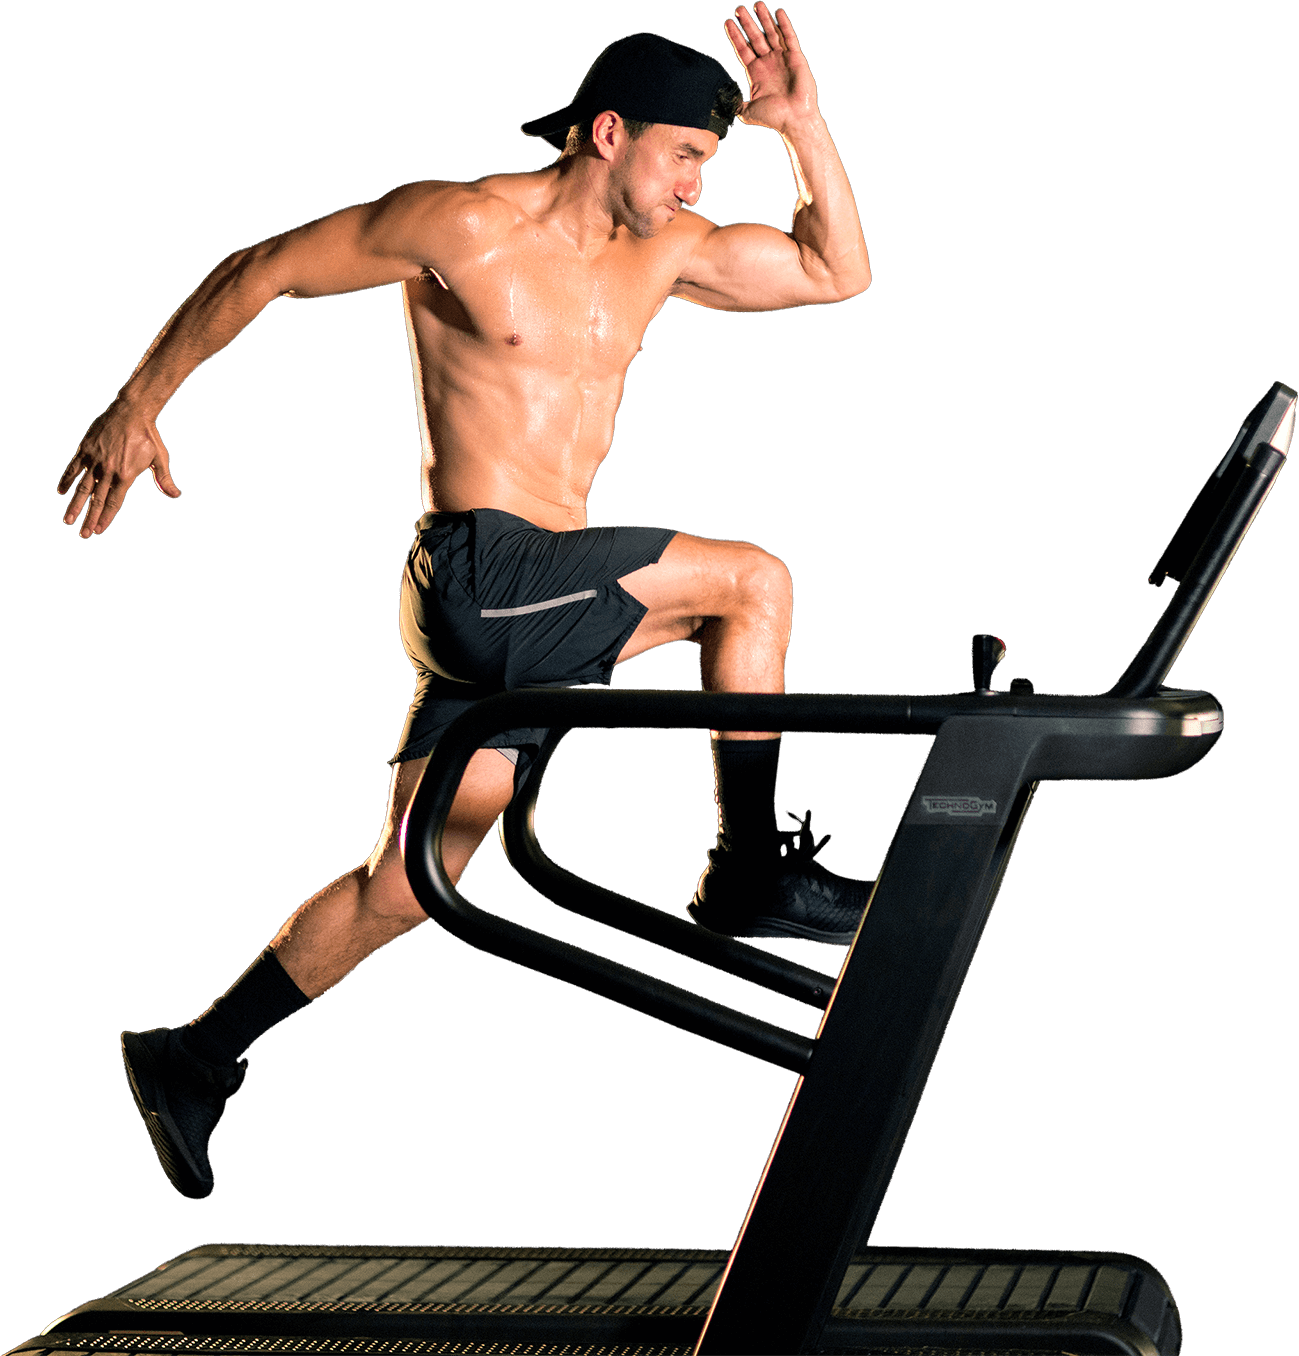 Man jumping on a treadmill